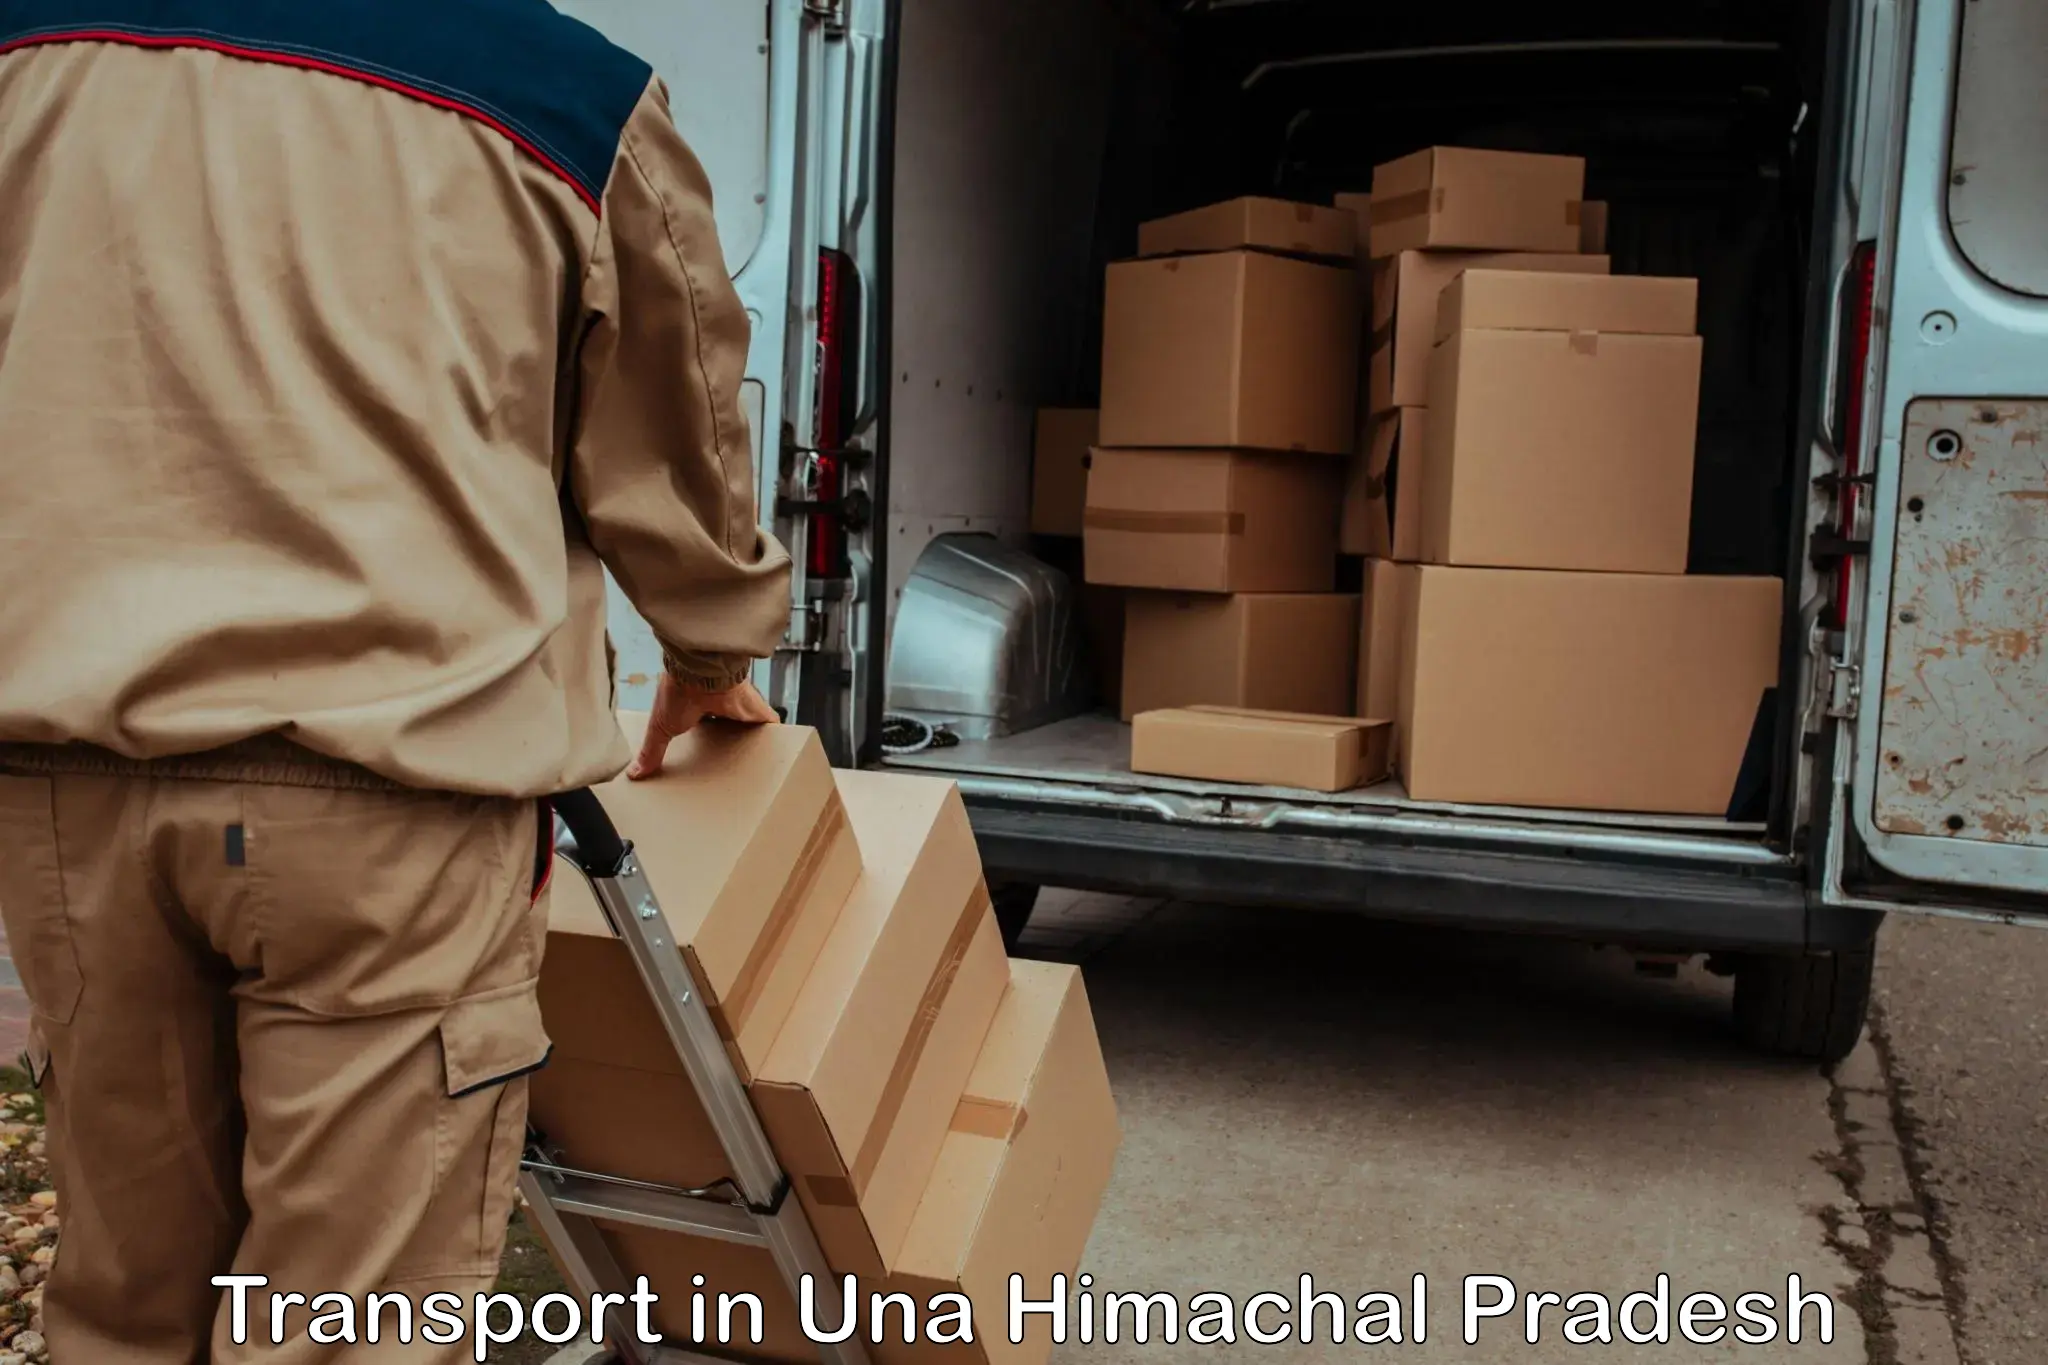 Transportation services in Una Himachal Pradesh